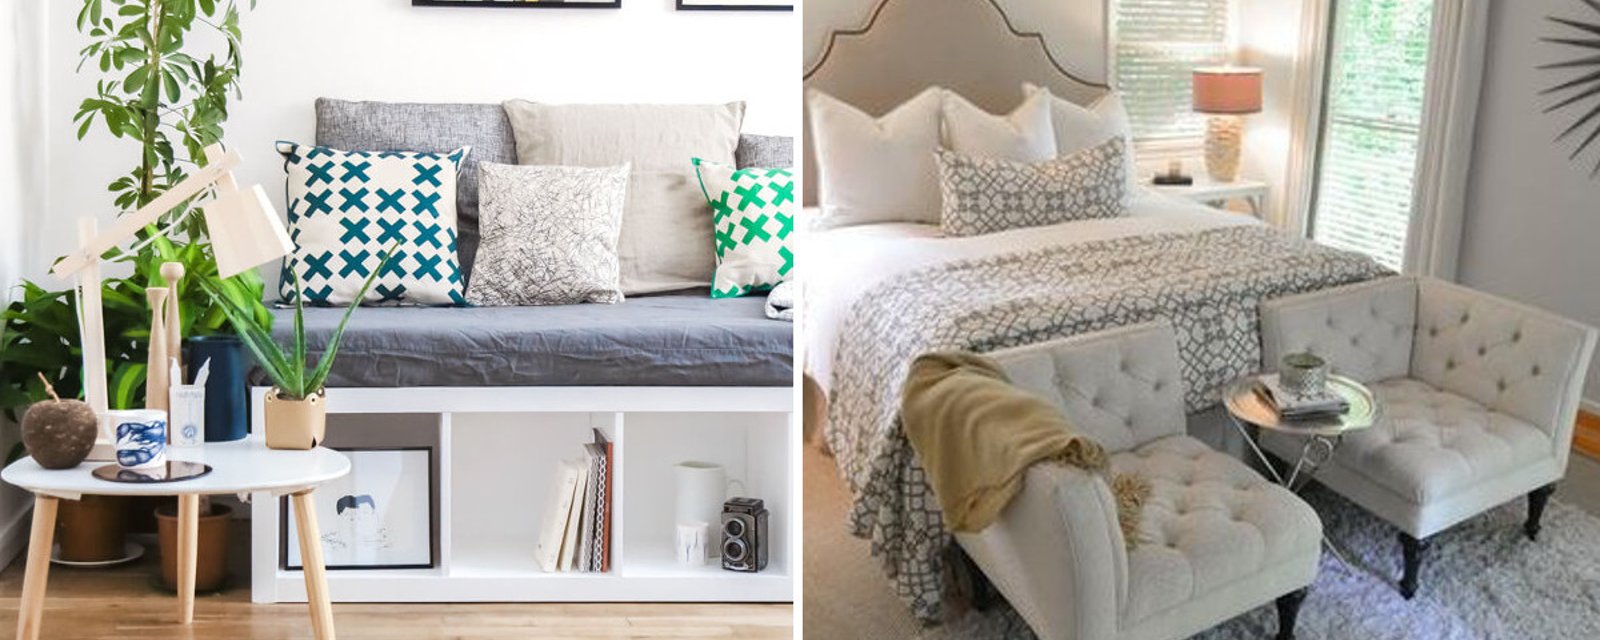 20 charmantes façons de décorer un pied de lit pour créer une belle ambiance